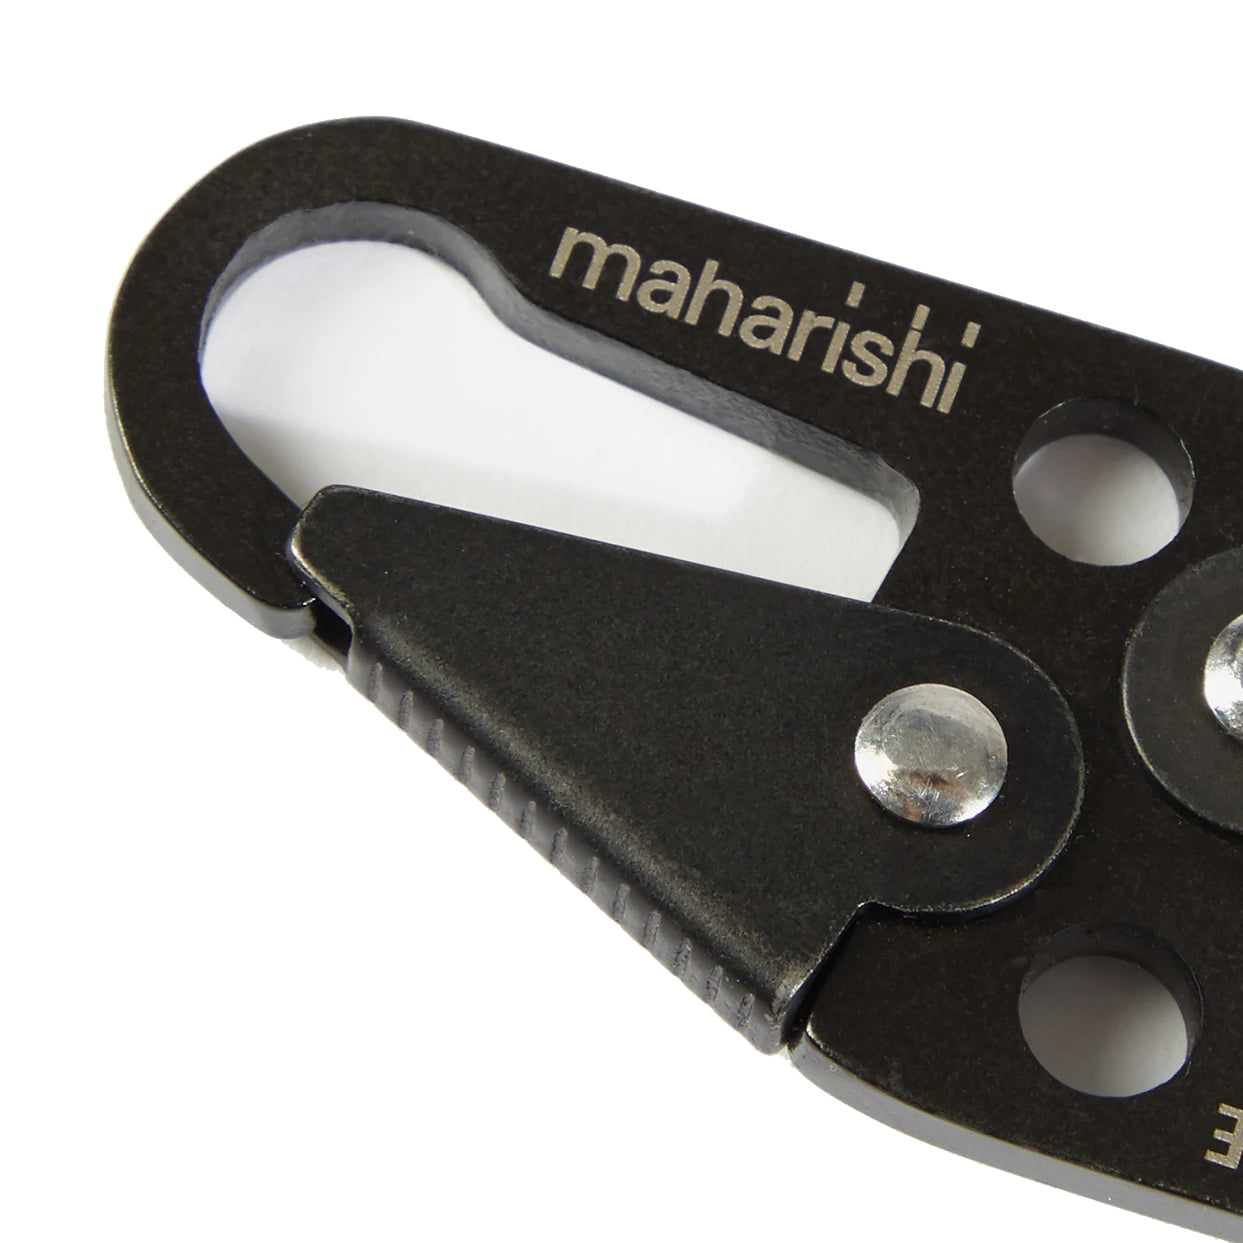 Maharishi Key Clip Black - ACCESSORIES - Canada